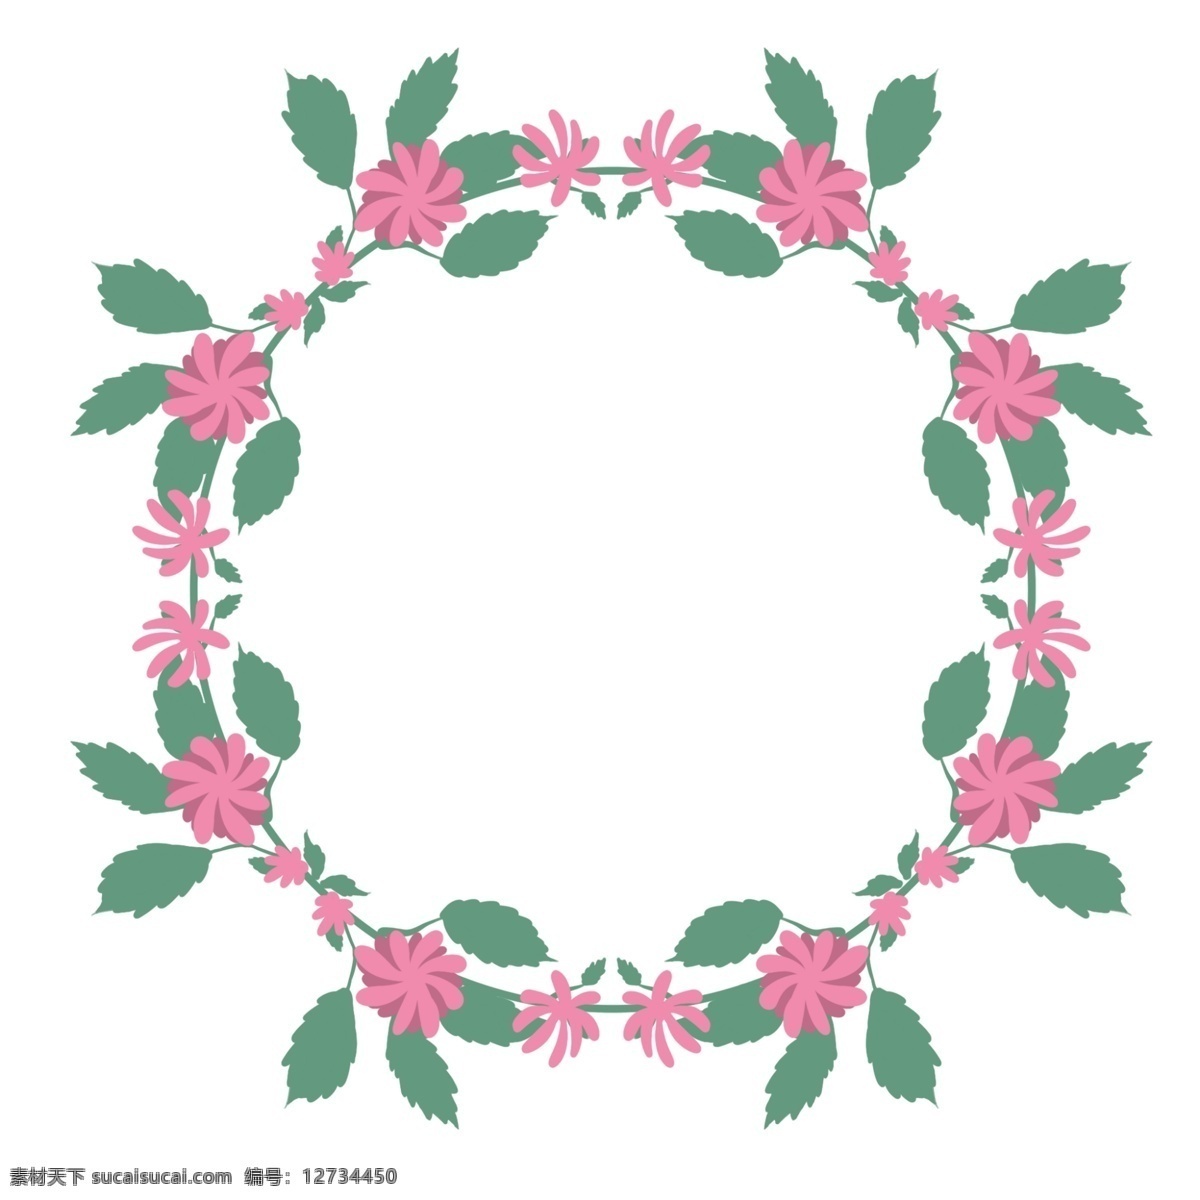 粉色 小花 花环 插画 粉色的小花 绿色的叶子 创意花环 立体花环 拼接花环 圆形花环 植物花环